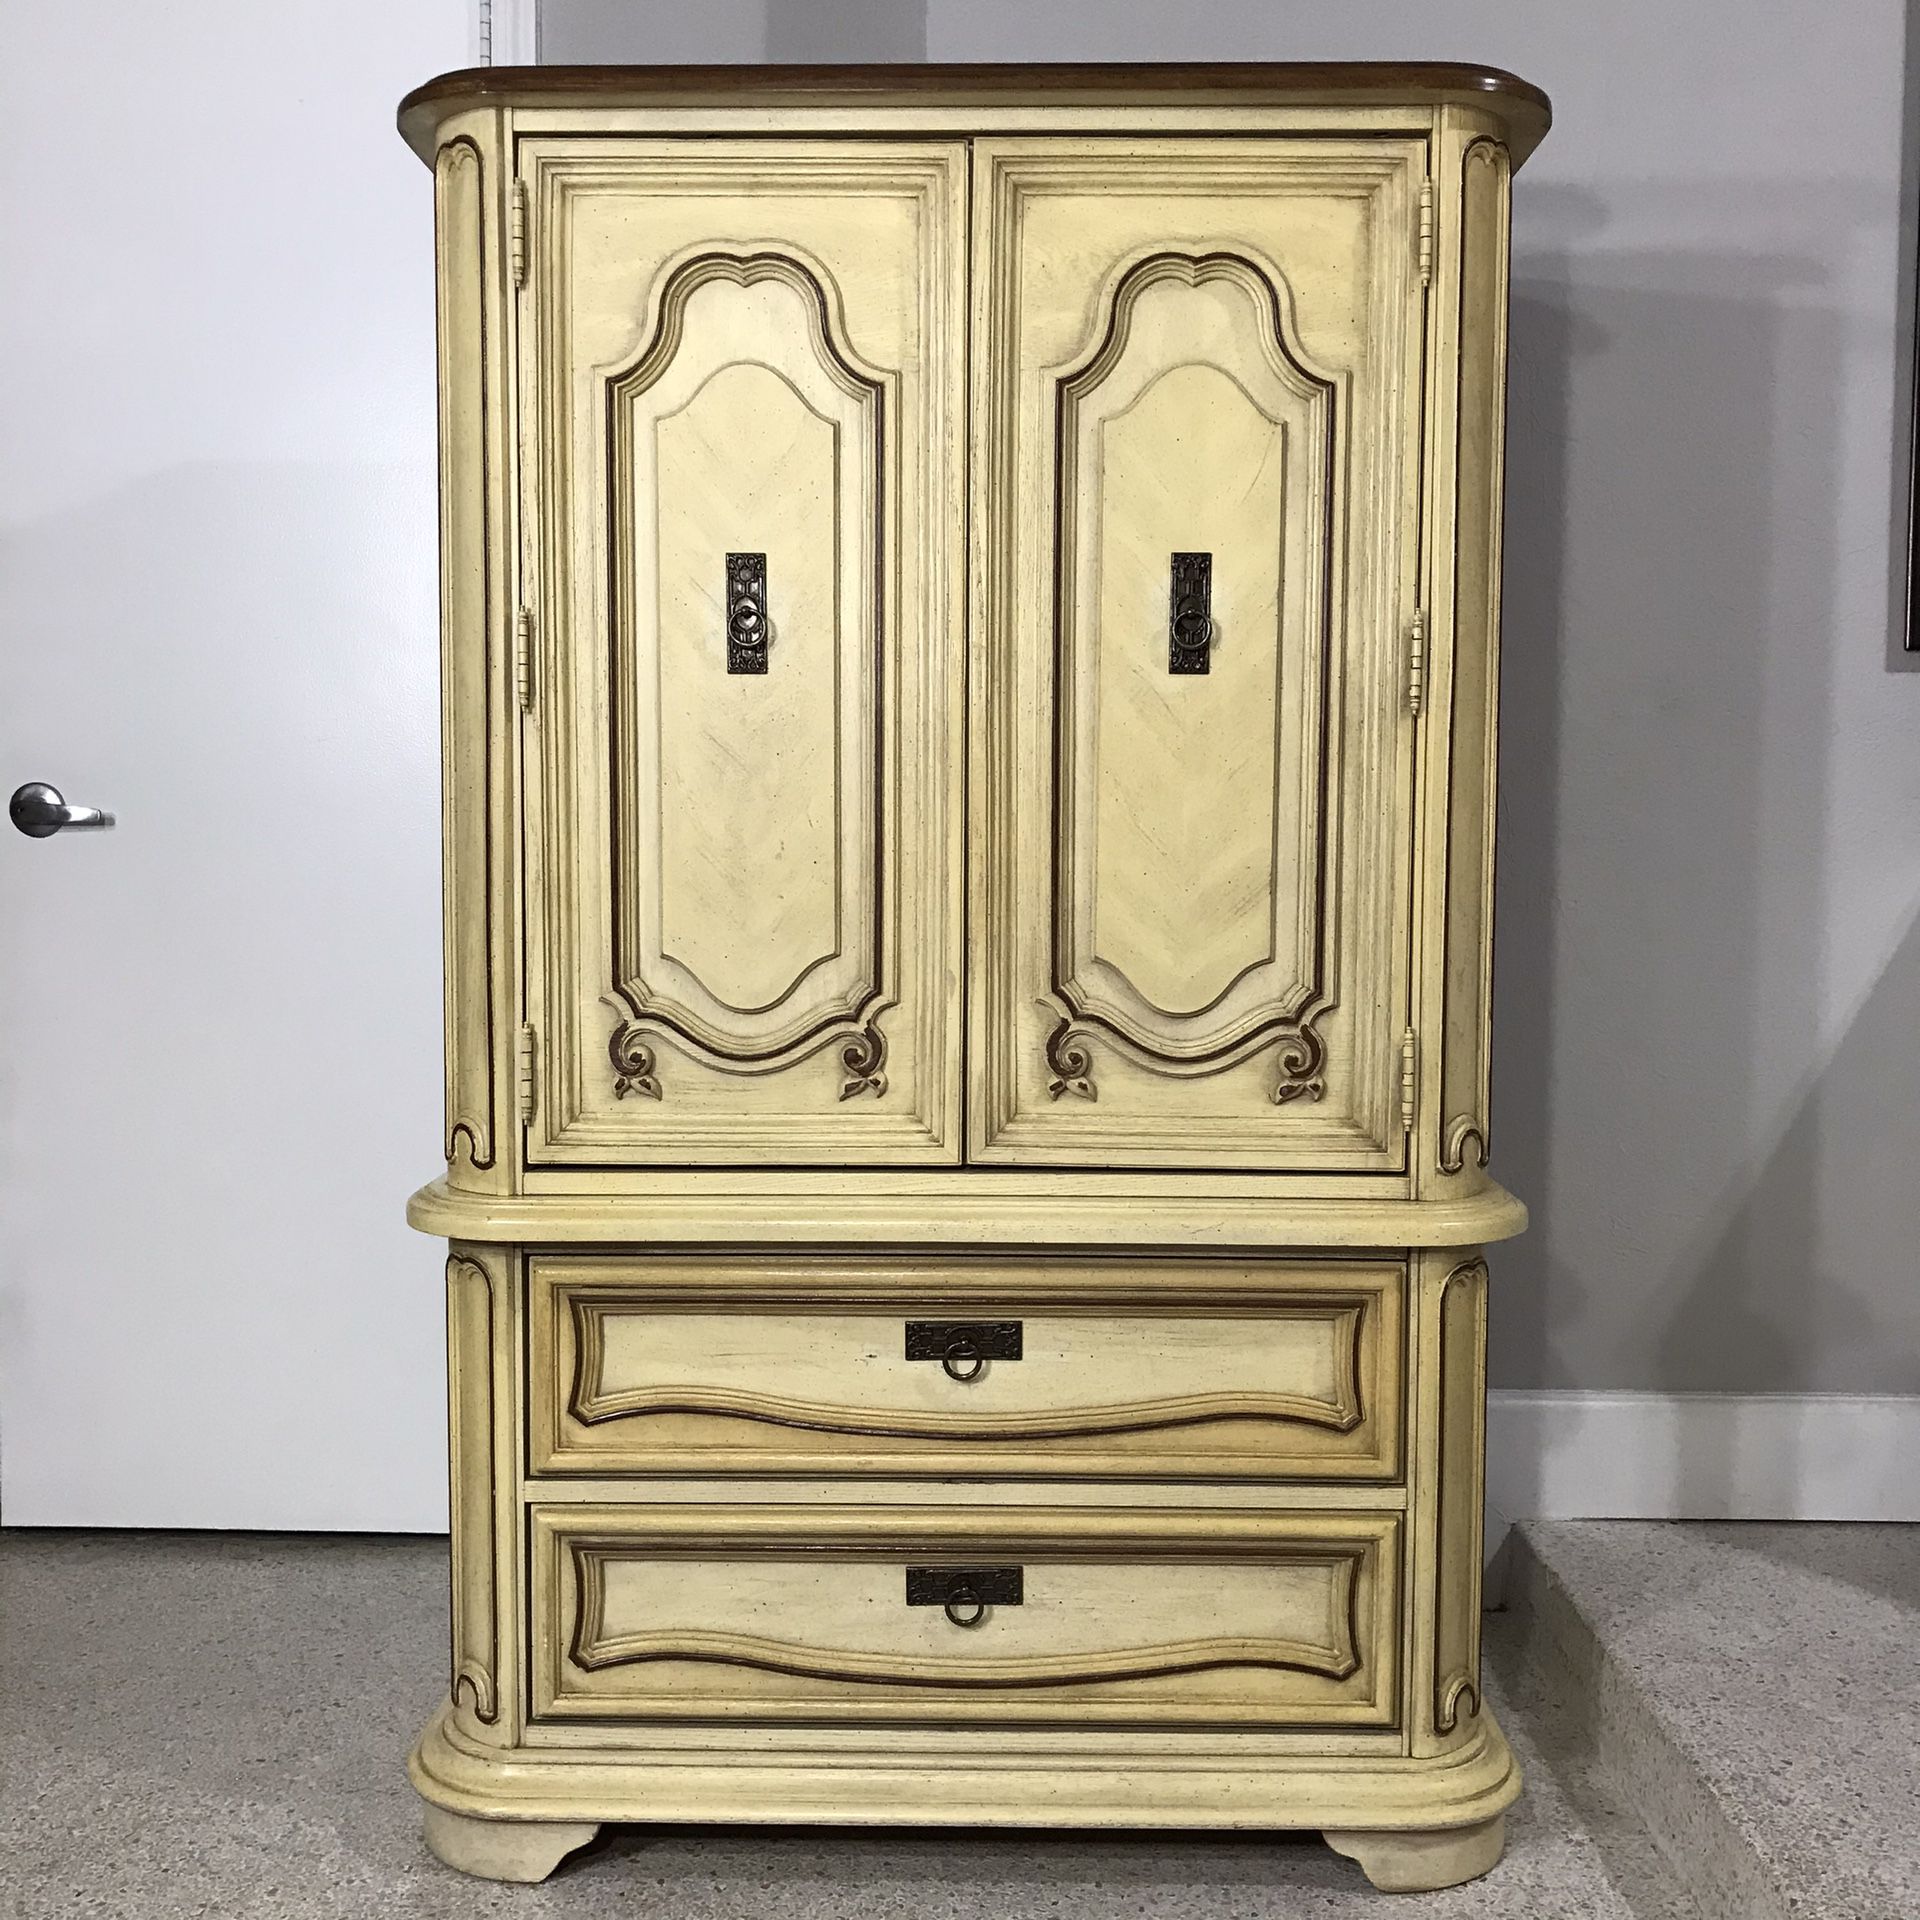 Dresser chest - Stanley wardrobe armoire bedroom furniture